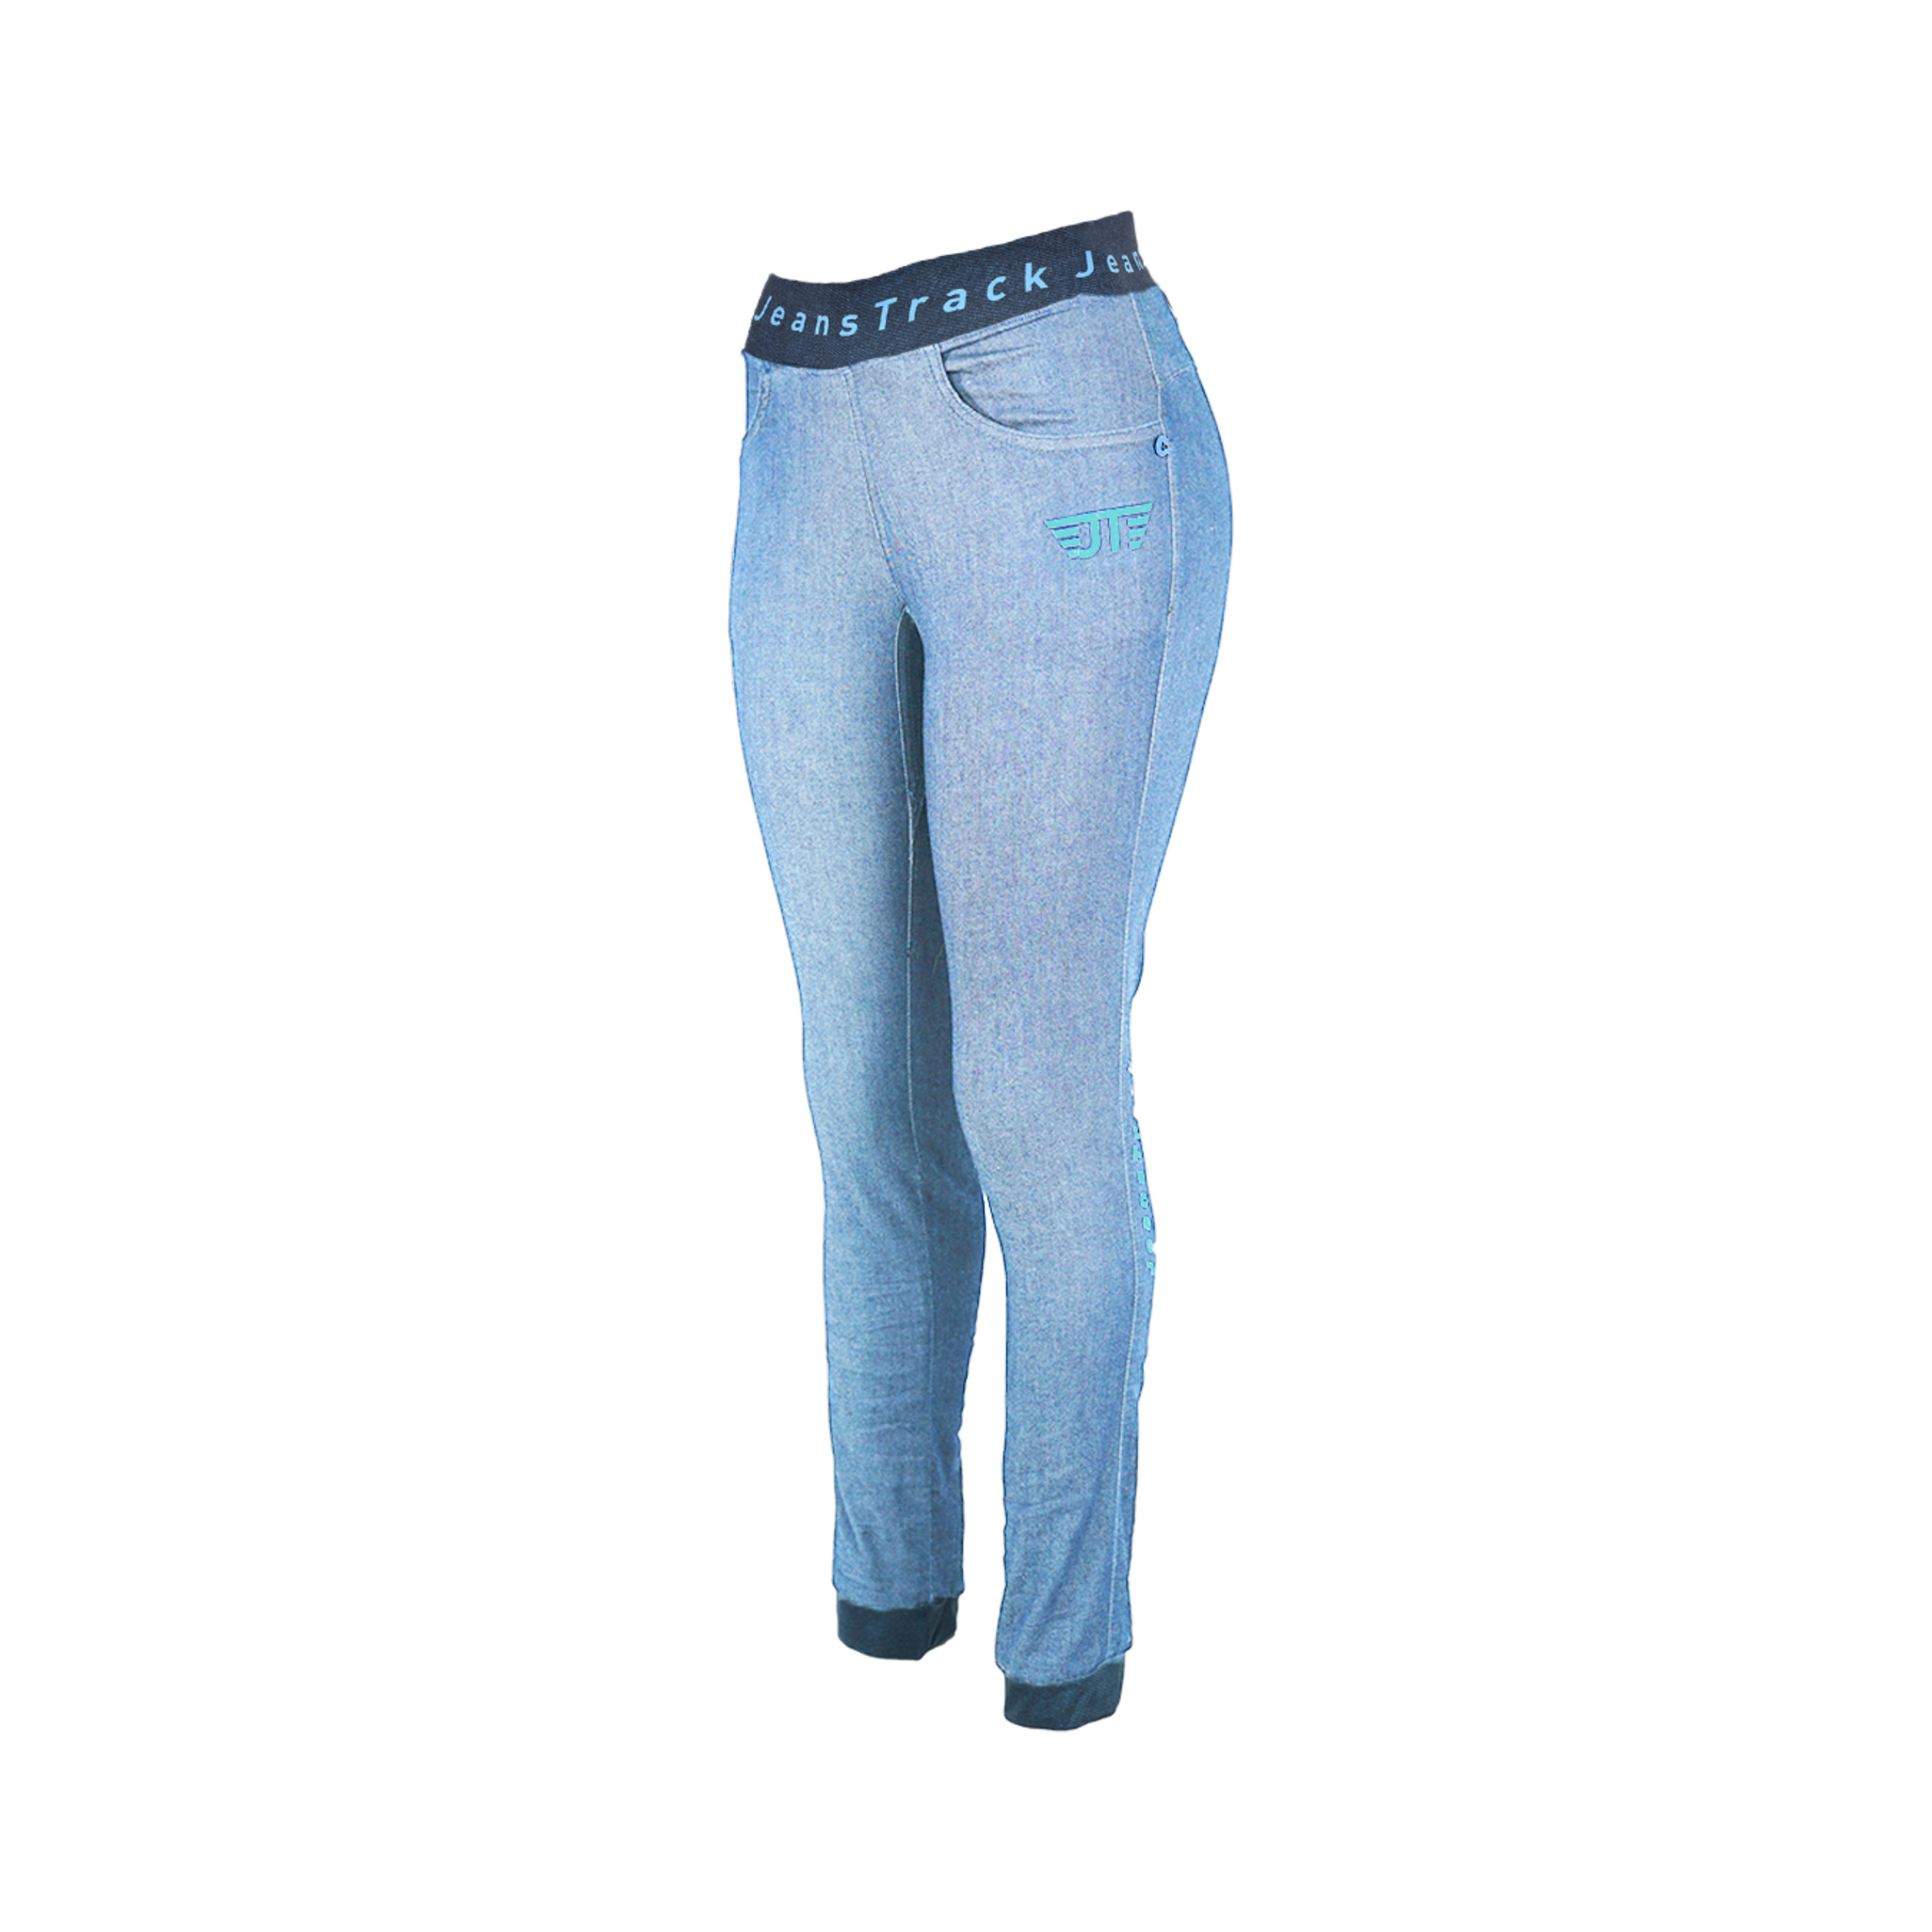 Pantalón Escalada Jeanstrack Dena - Azul Claro - Dena Jeans Bleach  MKP